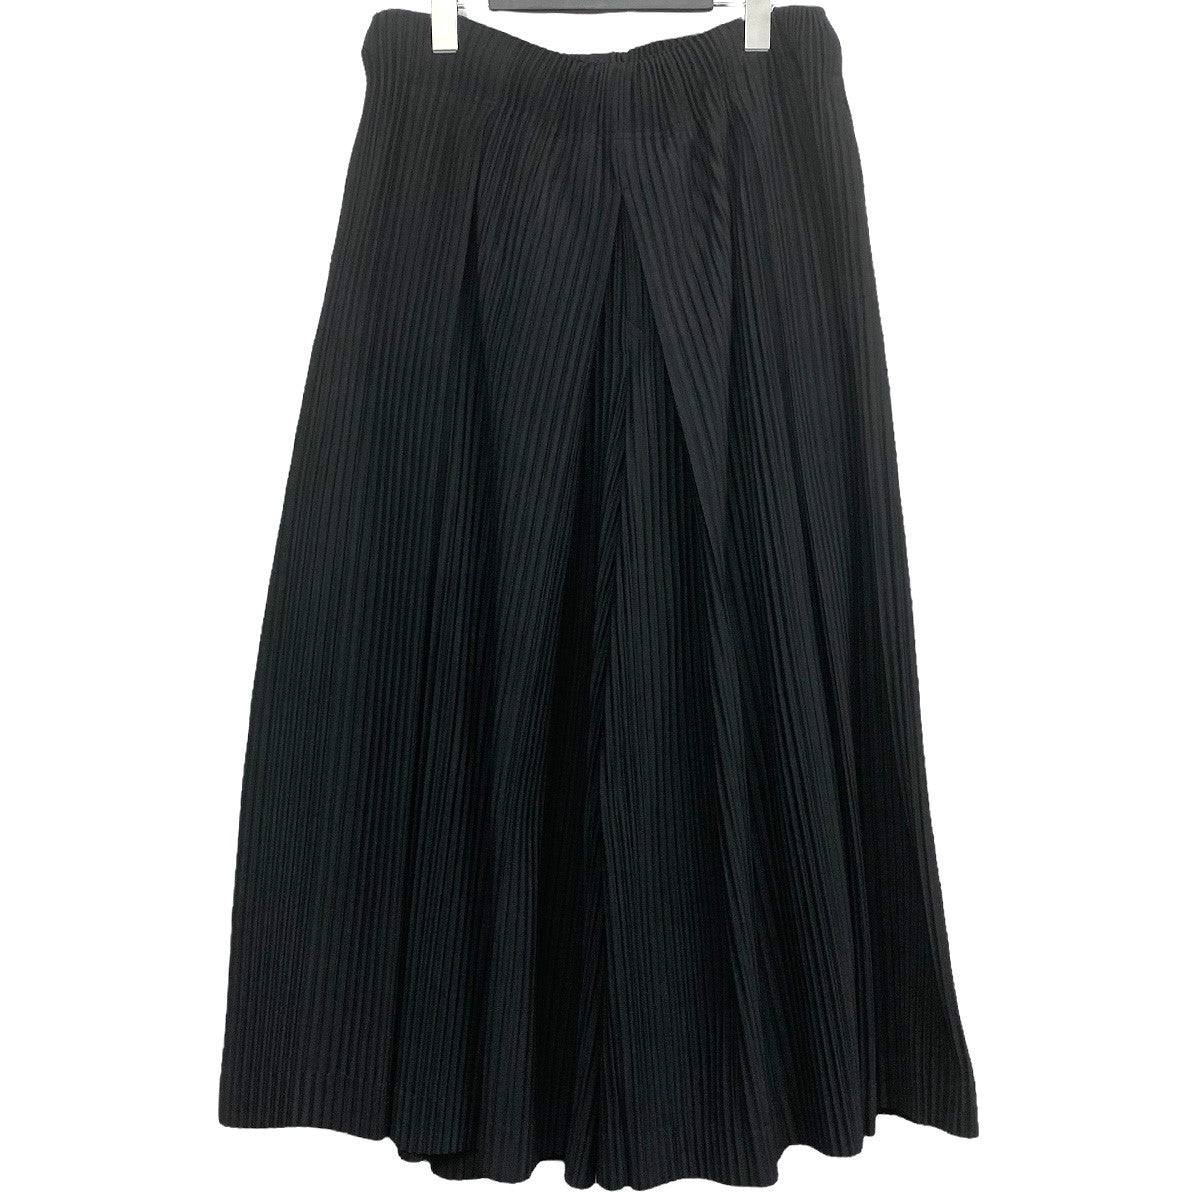 裾幅約32cm銀座本店購入 イッセイミヤケ 変形袴パンツ 黒 オールシーズン素材感